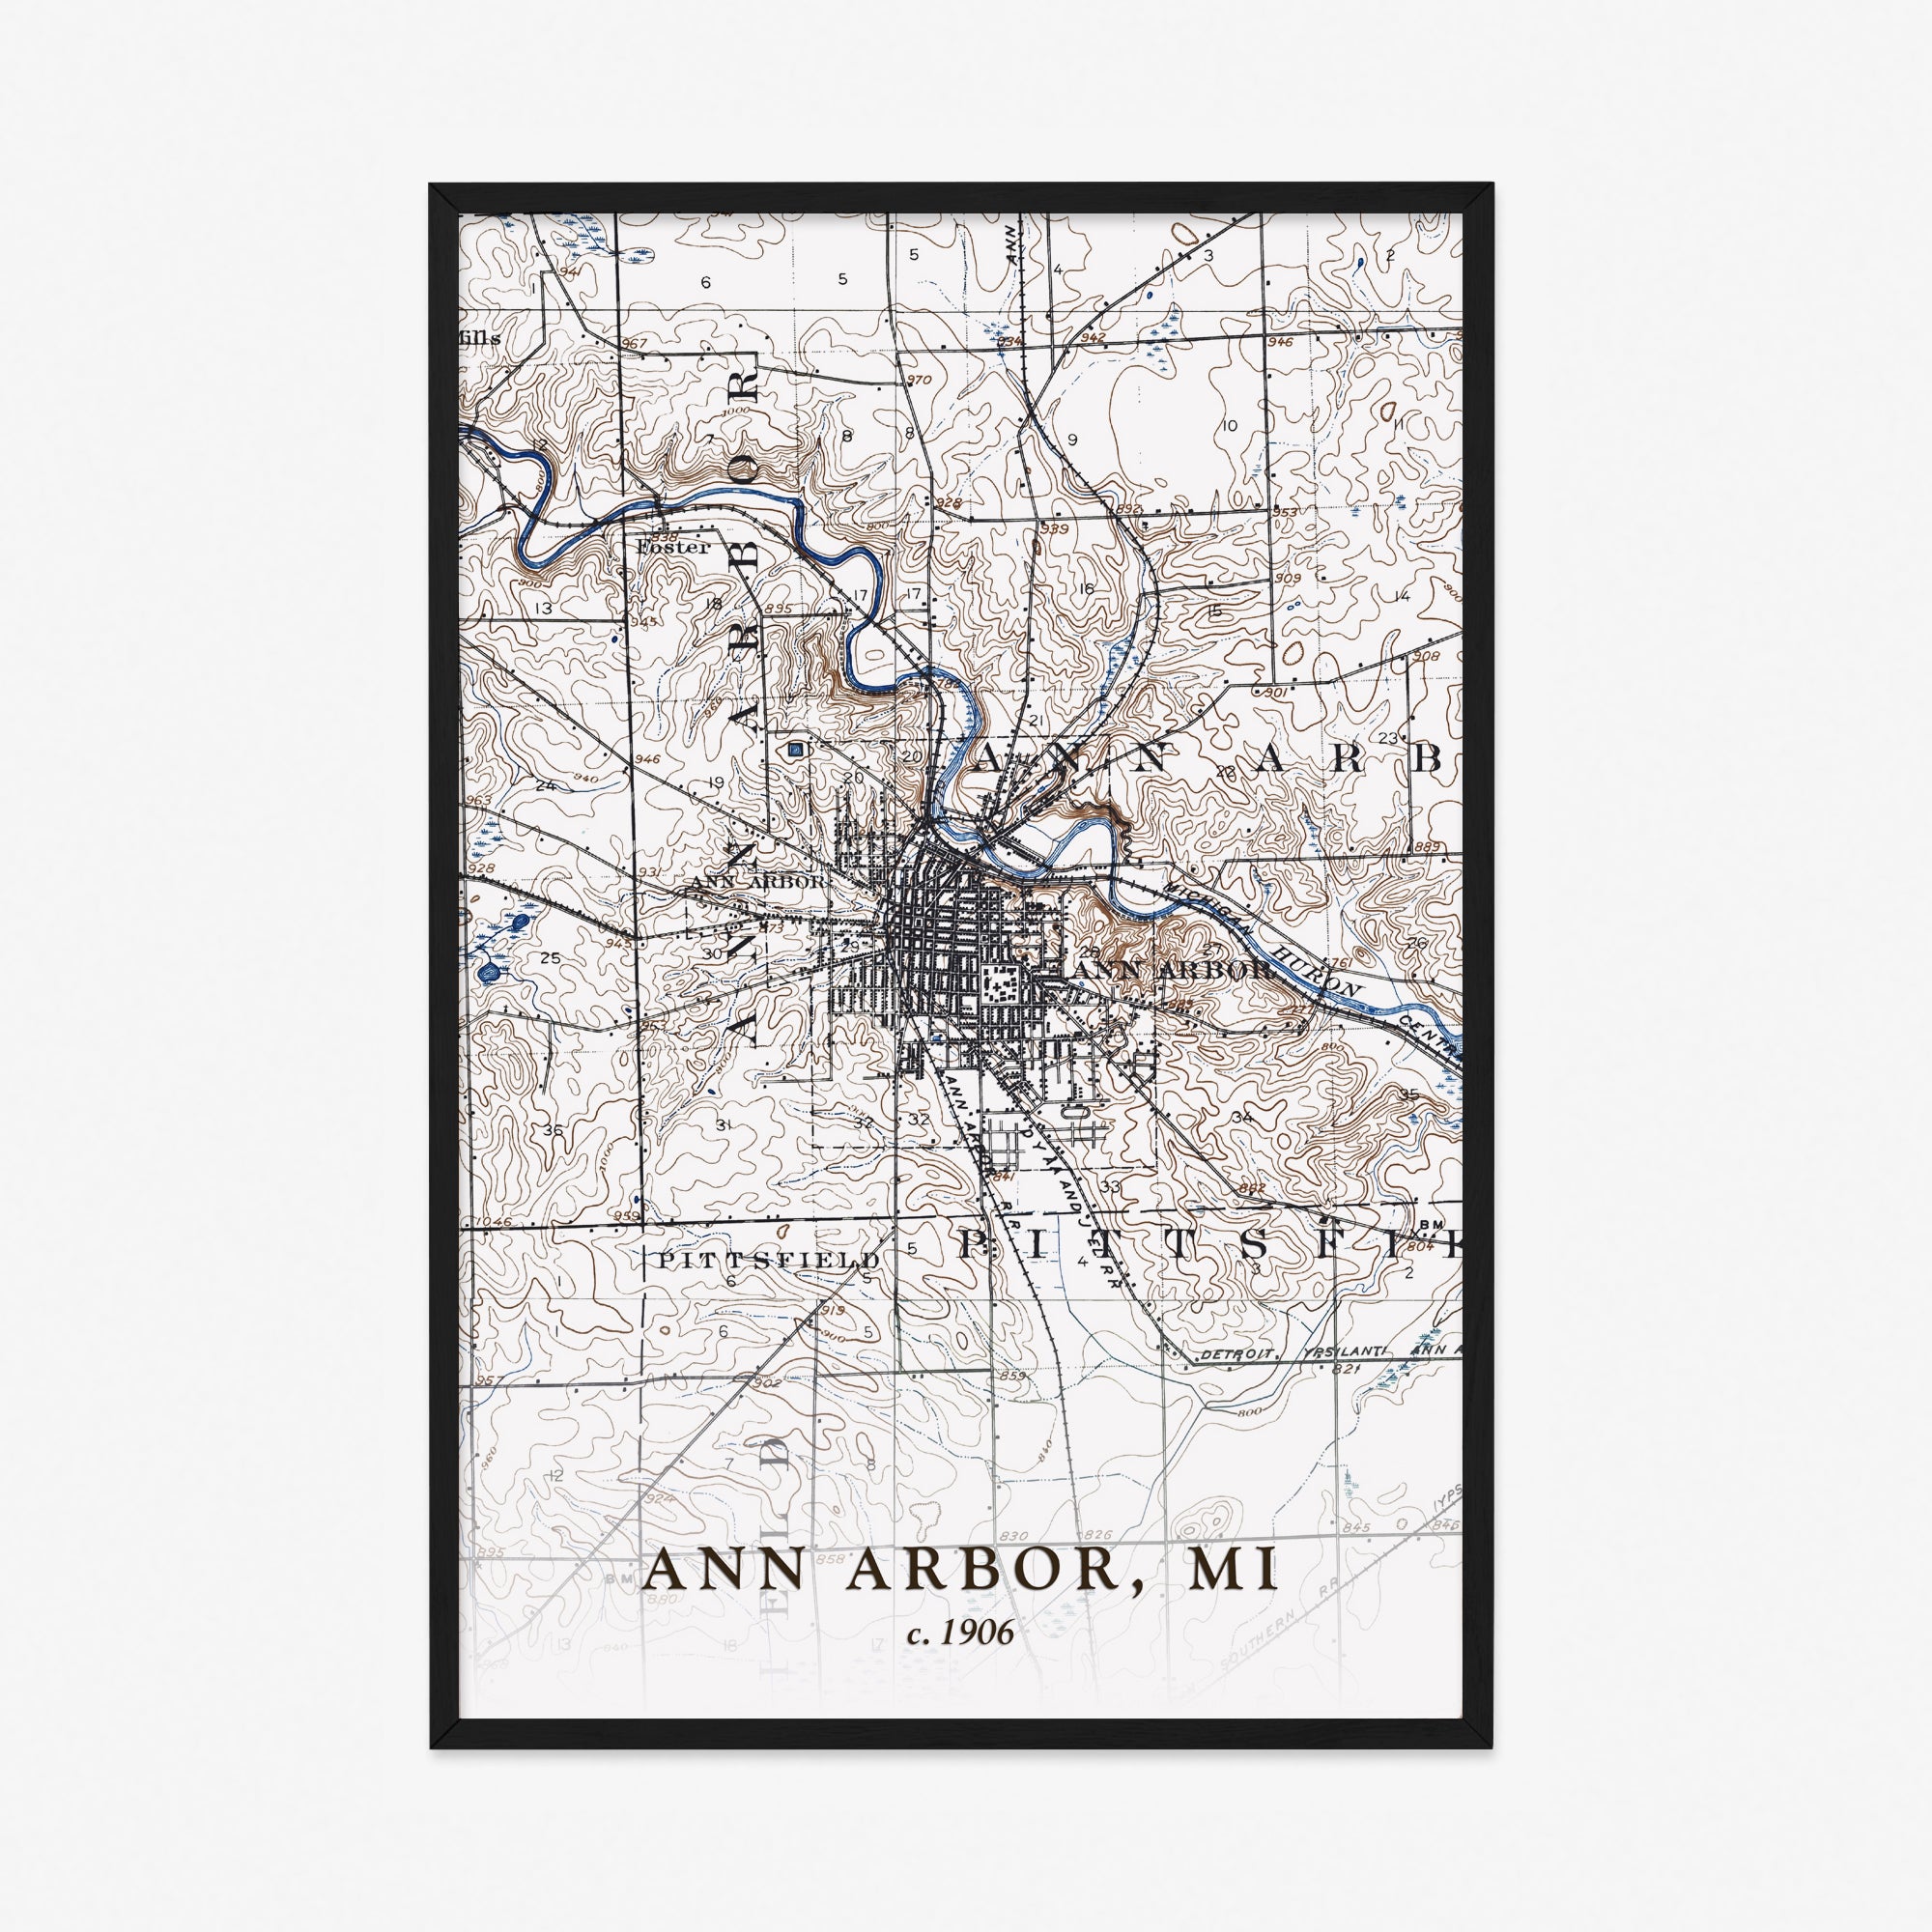 Ann Arbor, MI - 1906 Topographic Map